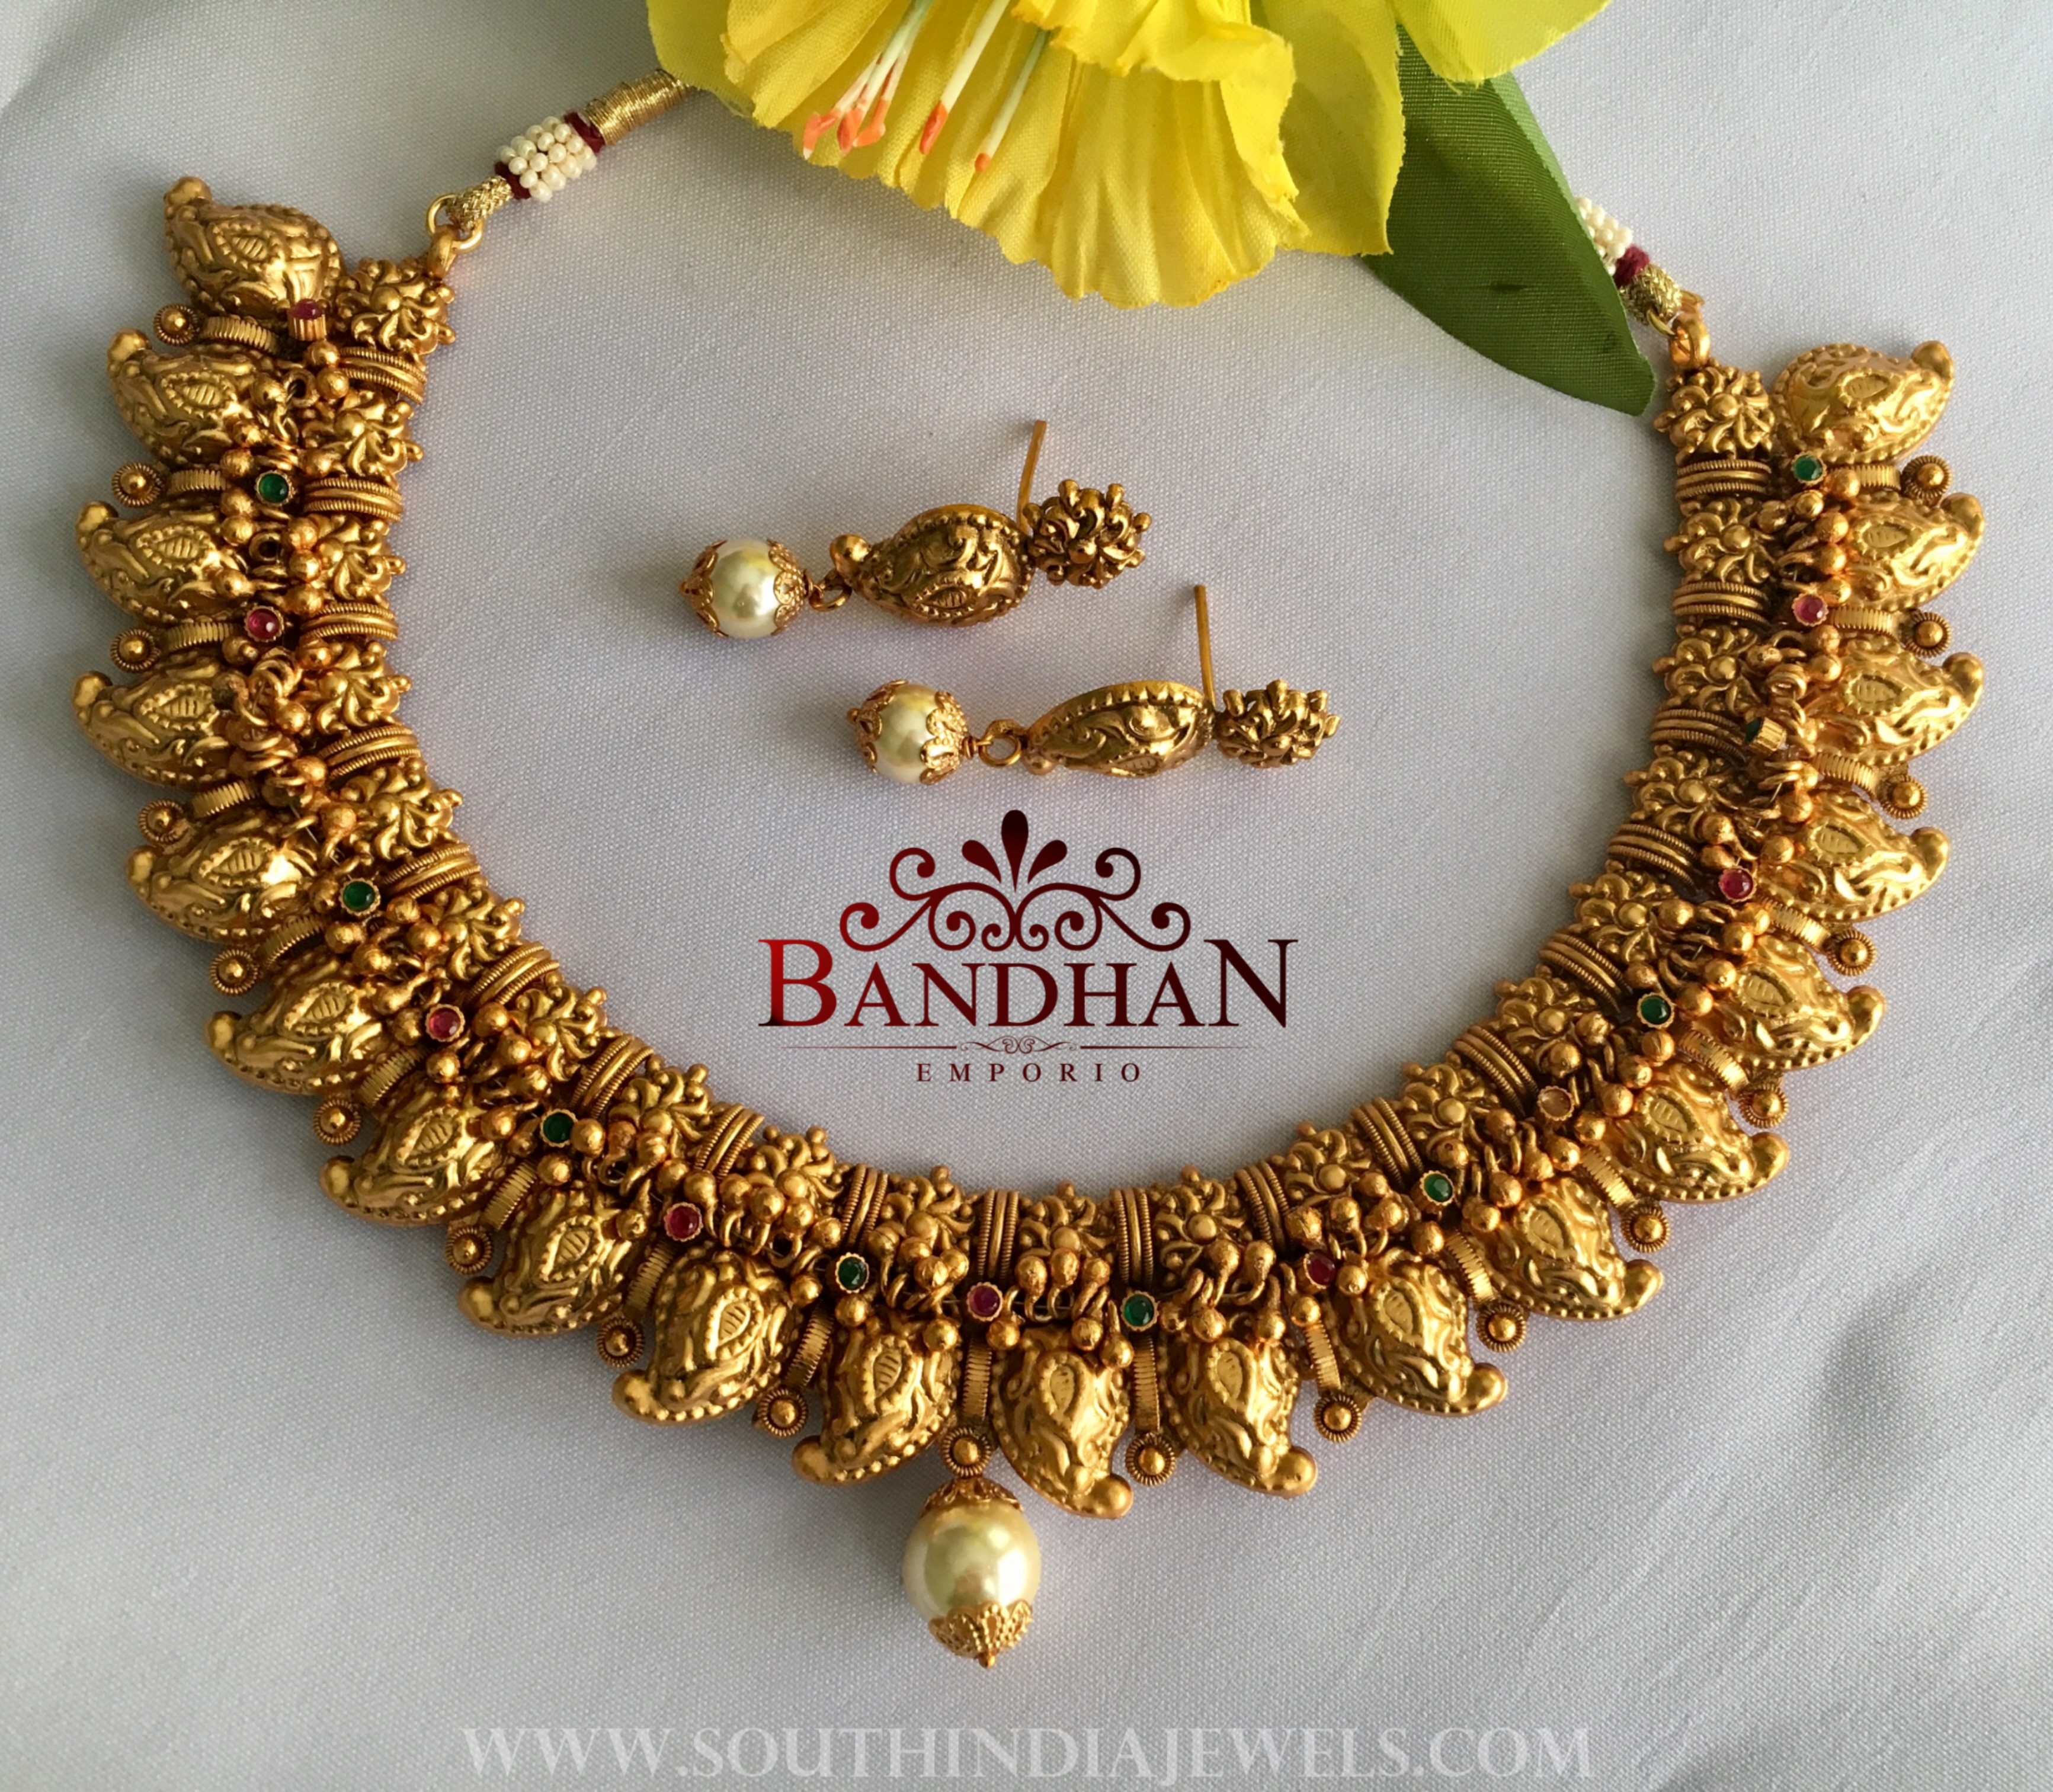 Bandhan Emporio Jewellery Designs